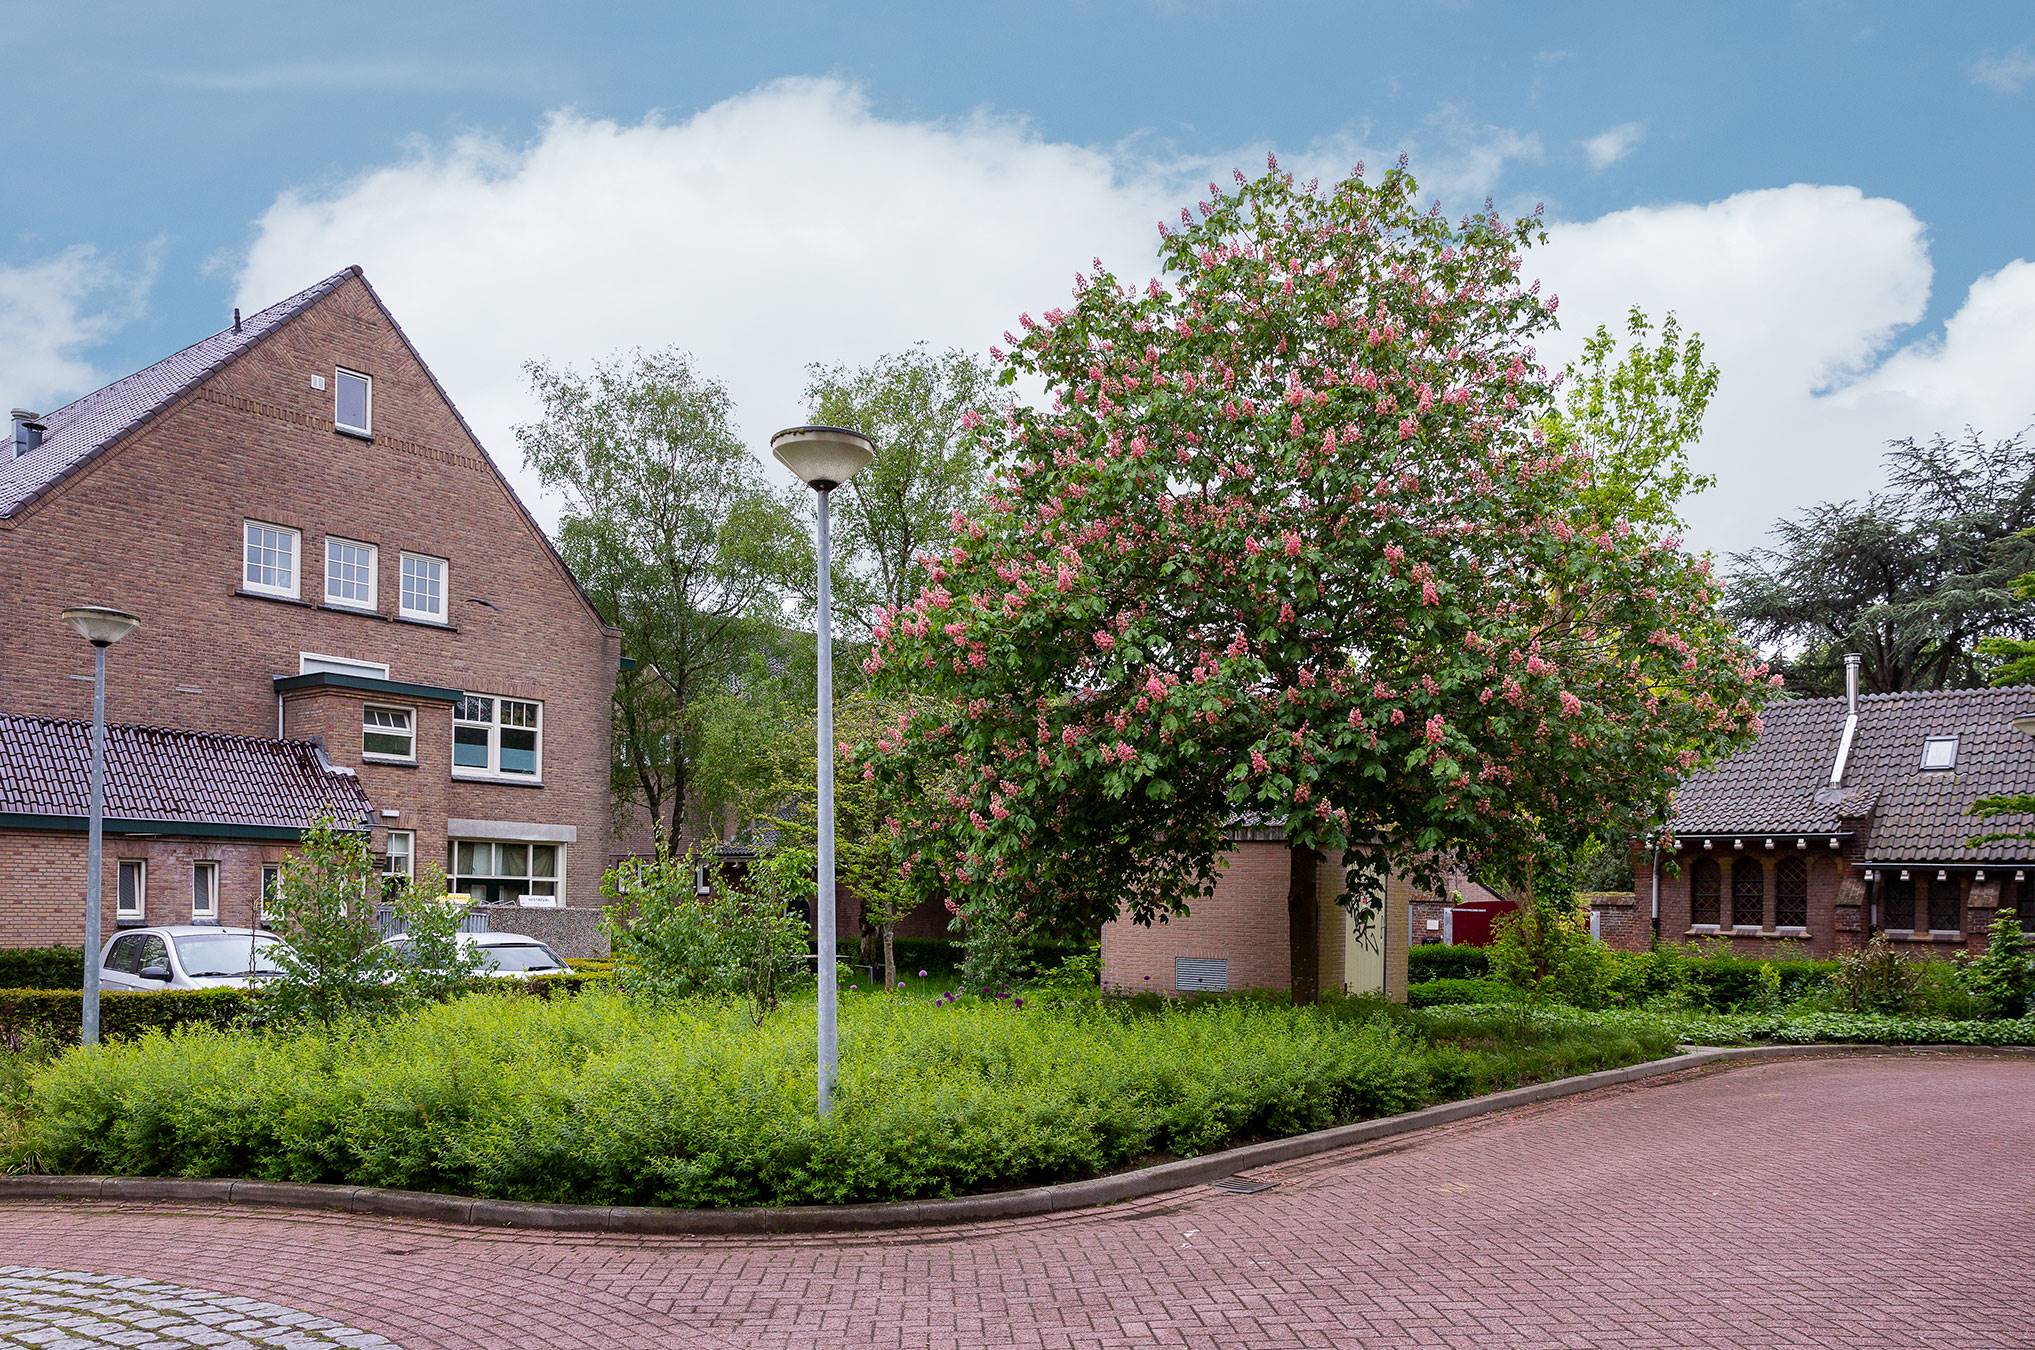 Laurentius wonen, Breda - Wij onderhouden het groen van deze woonomgevingen op basis van beeldkwaliteit